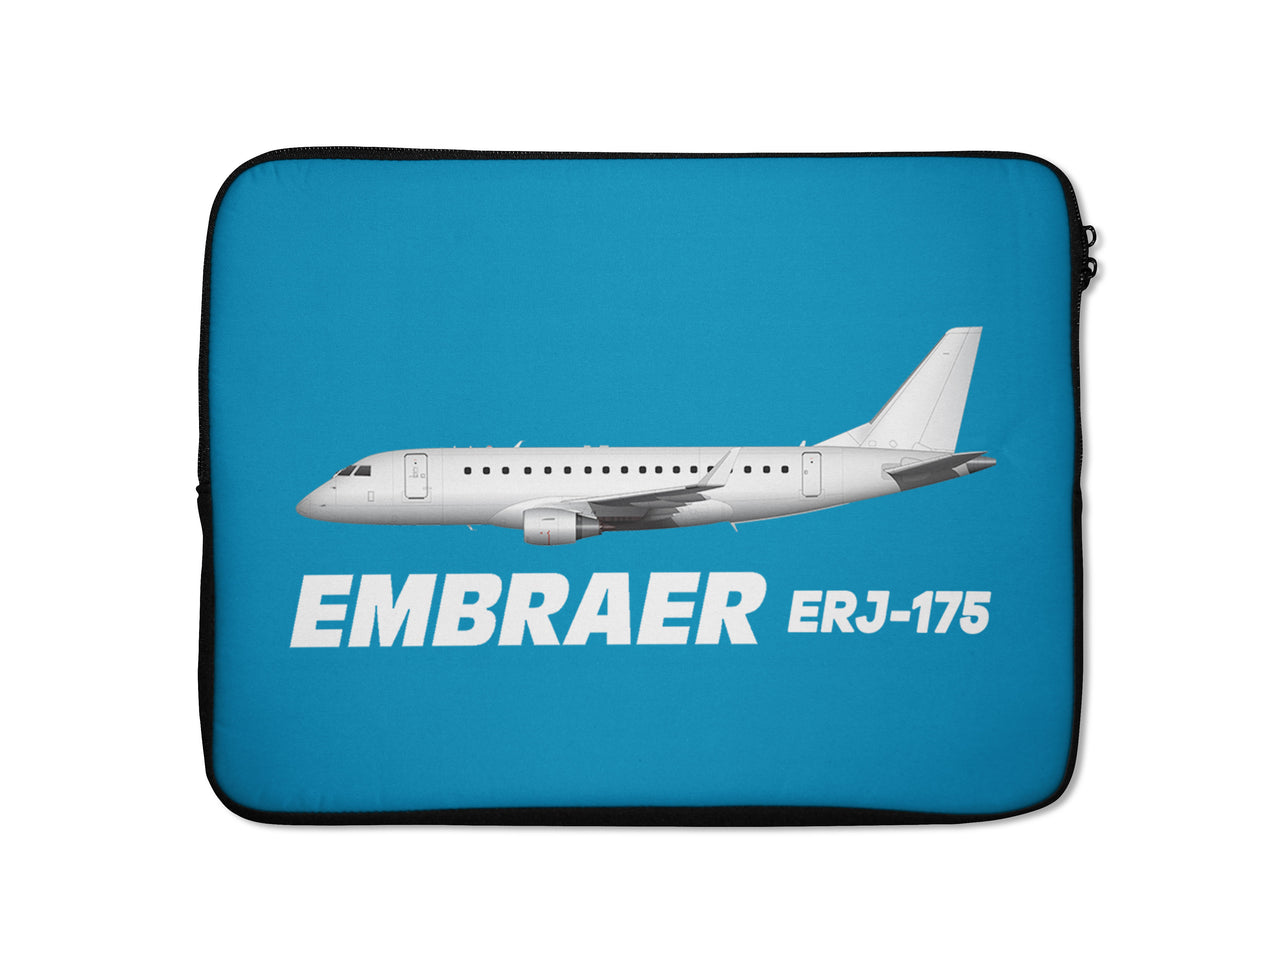 The Embraer ERJ-175 Designed Laptop & Tablet Cases